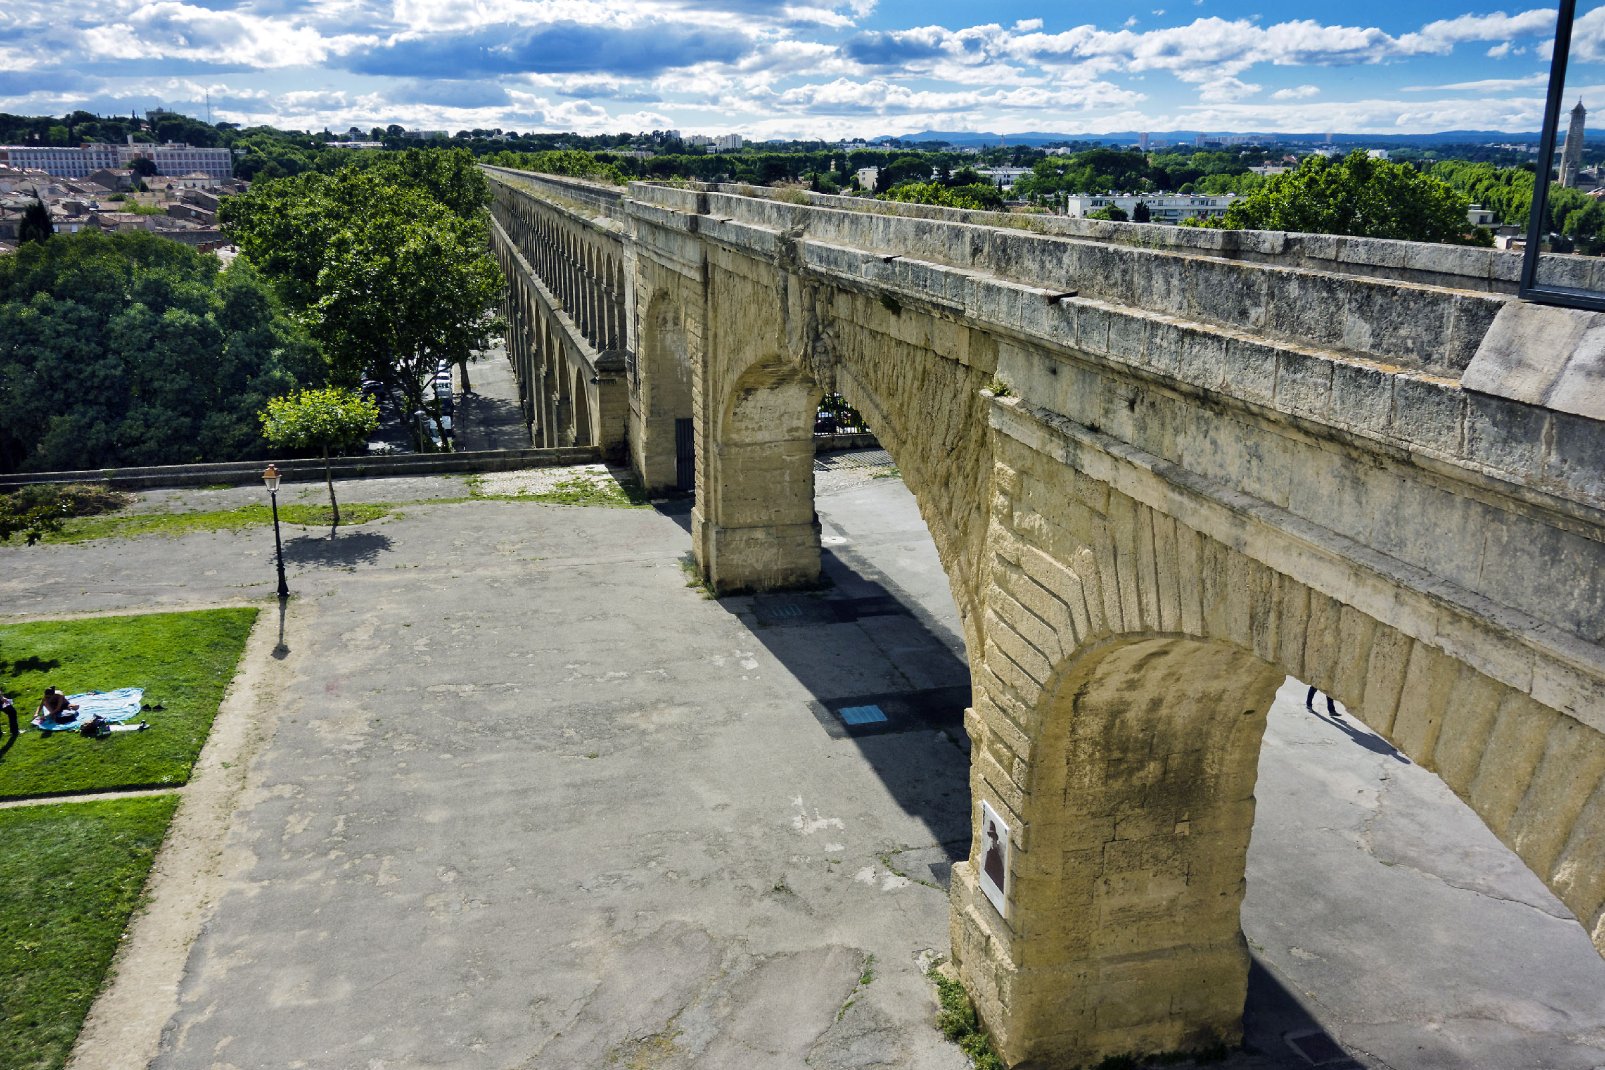 A sa construction au XVème siècle, l'aqueduc du Peyrou était destiné à alimenter la ville de Montpellier en eau. Aujourd'hui, il a donné son nom à un quartier, les Arceaux.